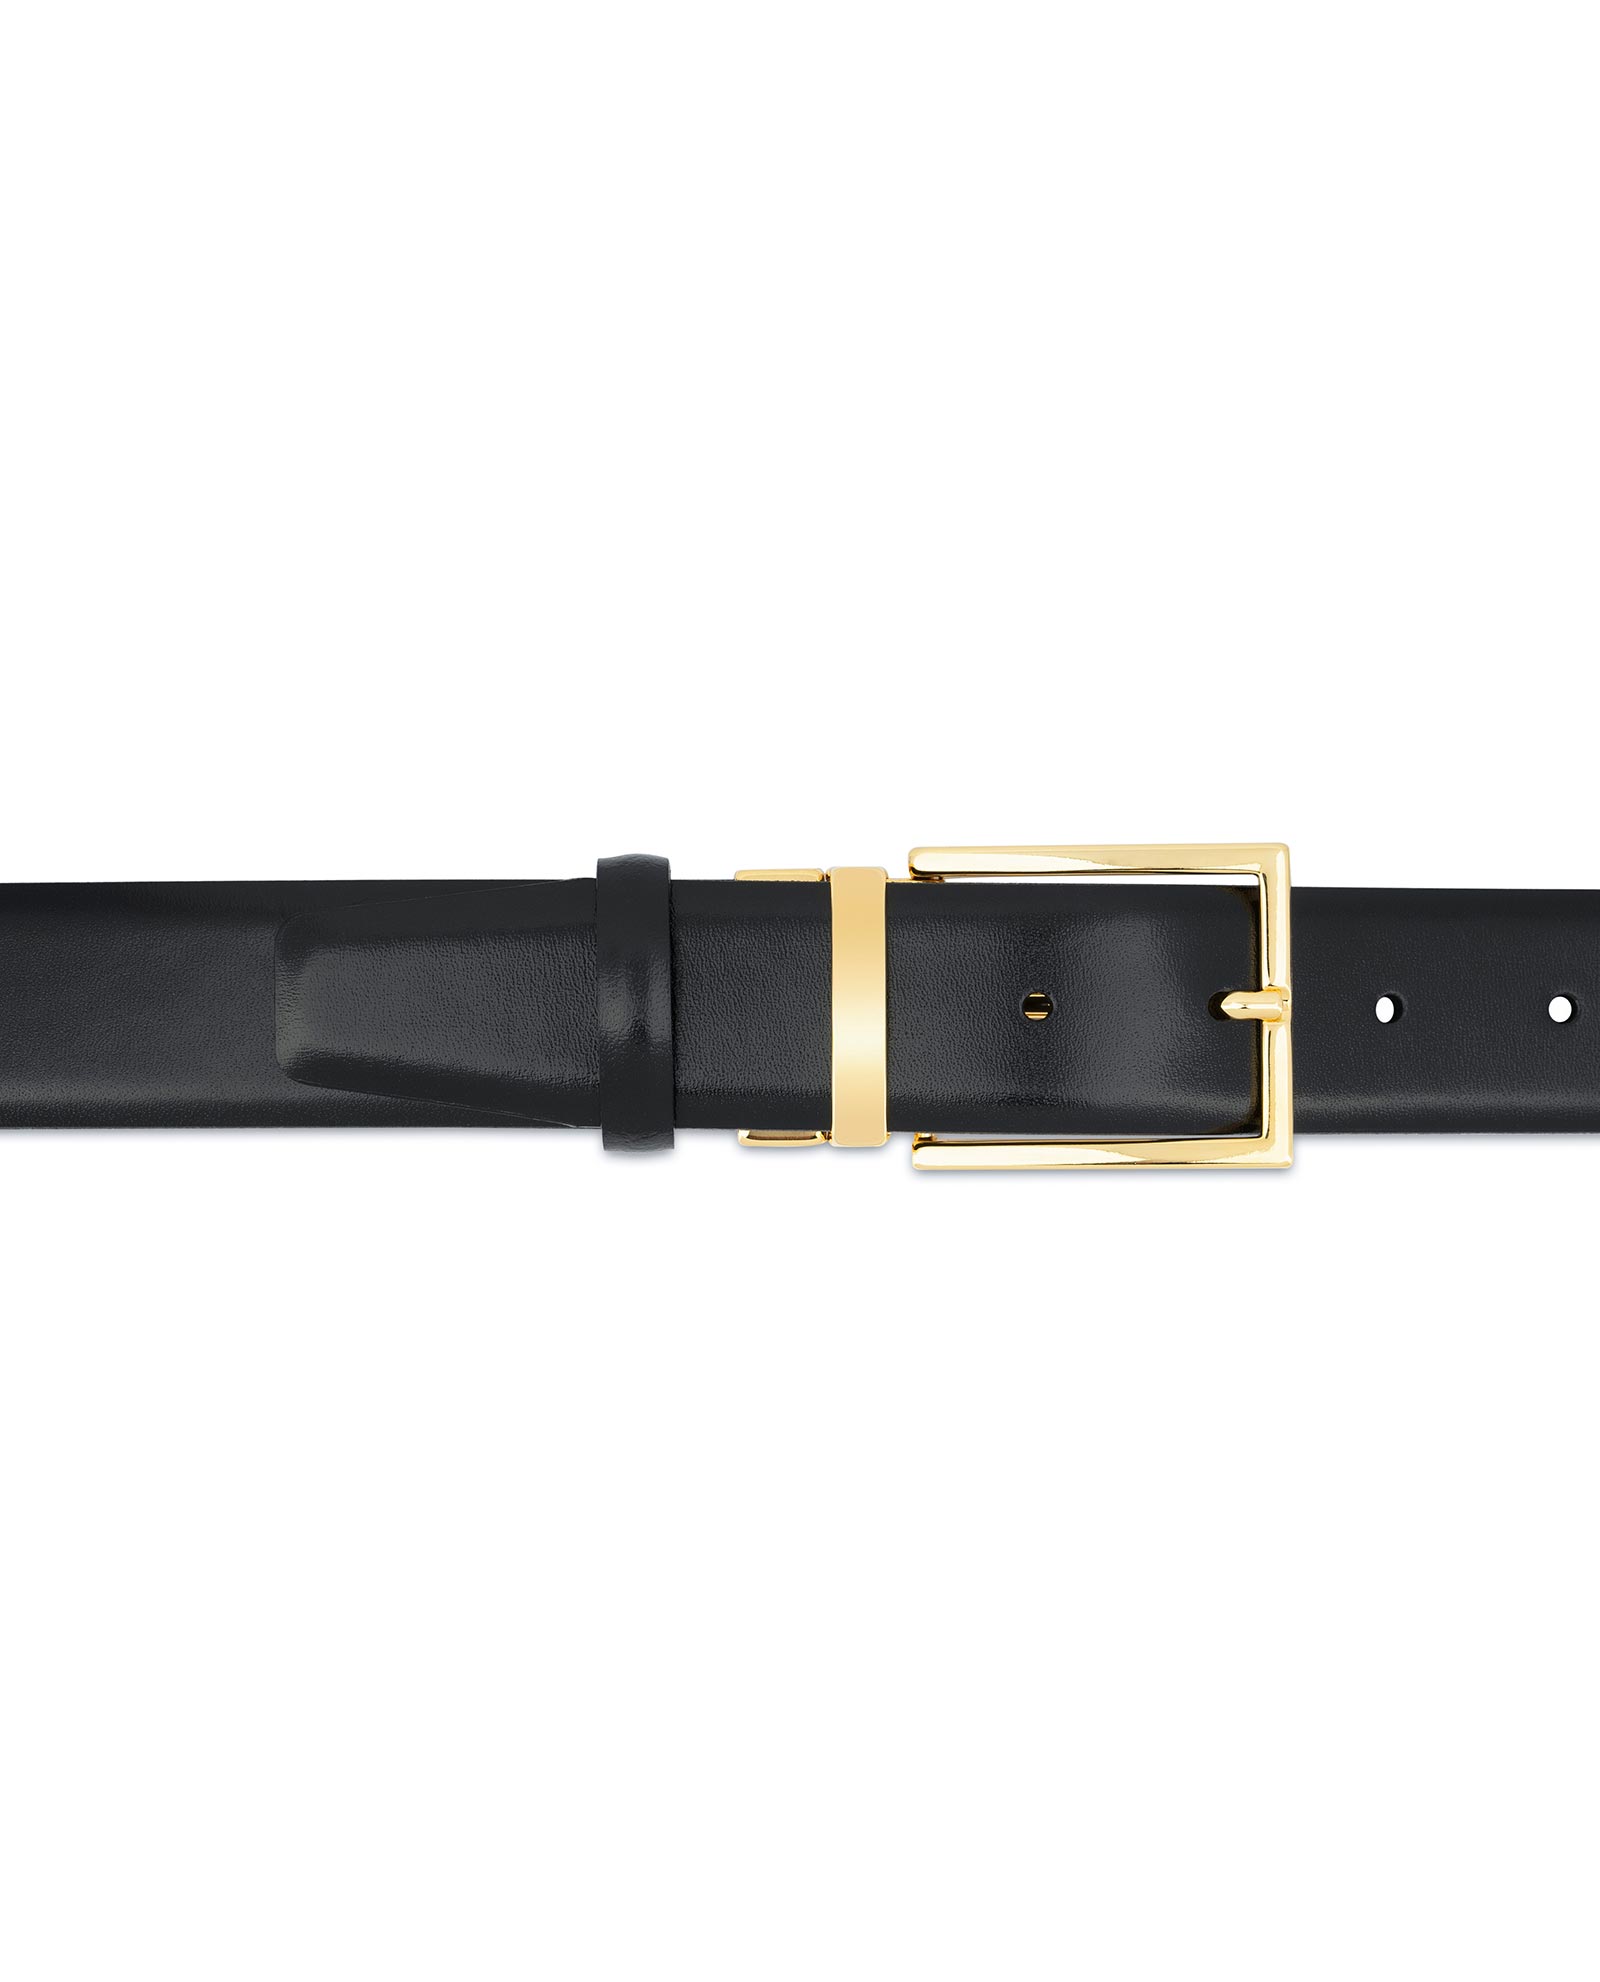 Buy Black Belt With Gold Buckle | For Men | LeatherBeltsOnline.om